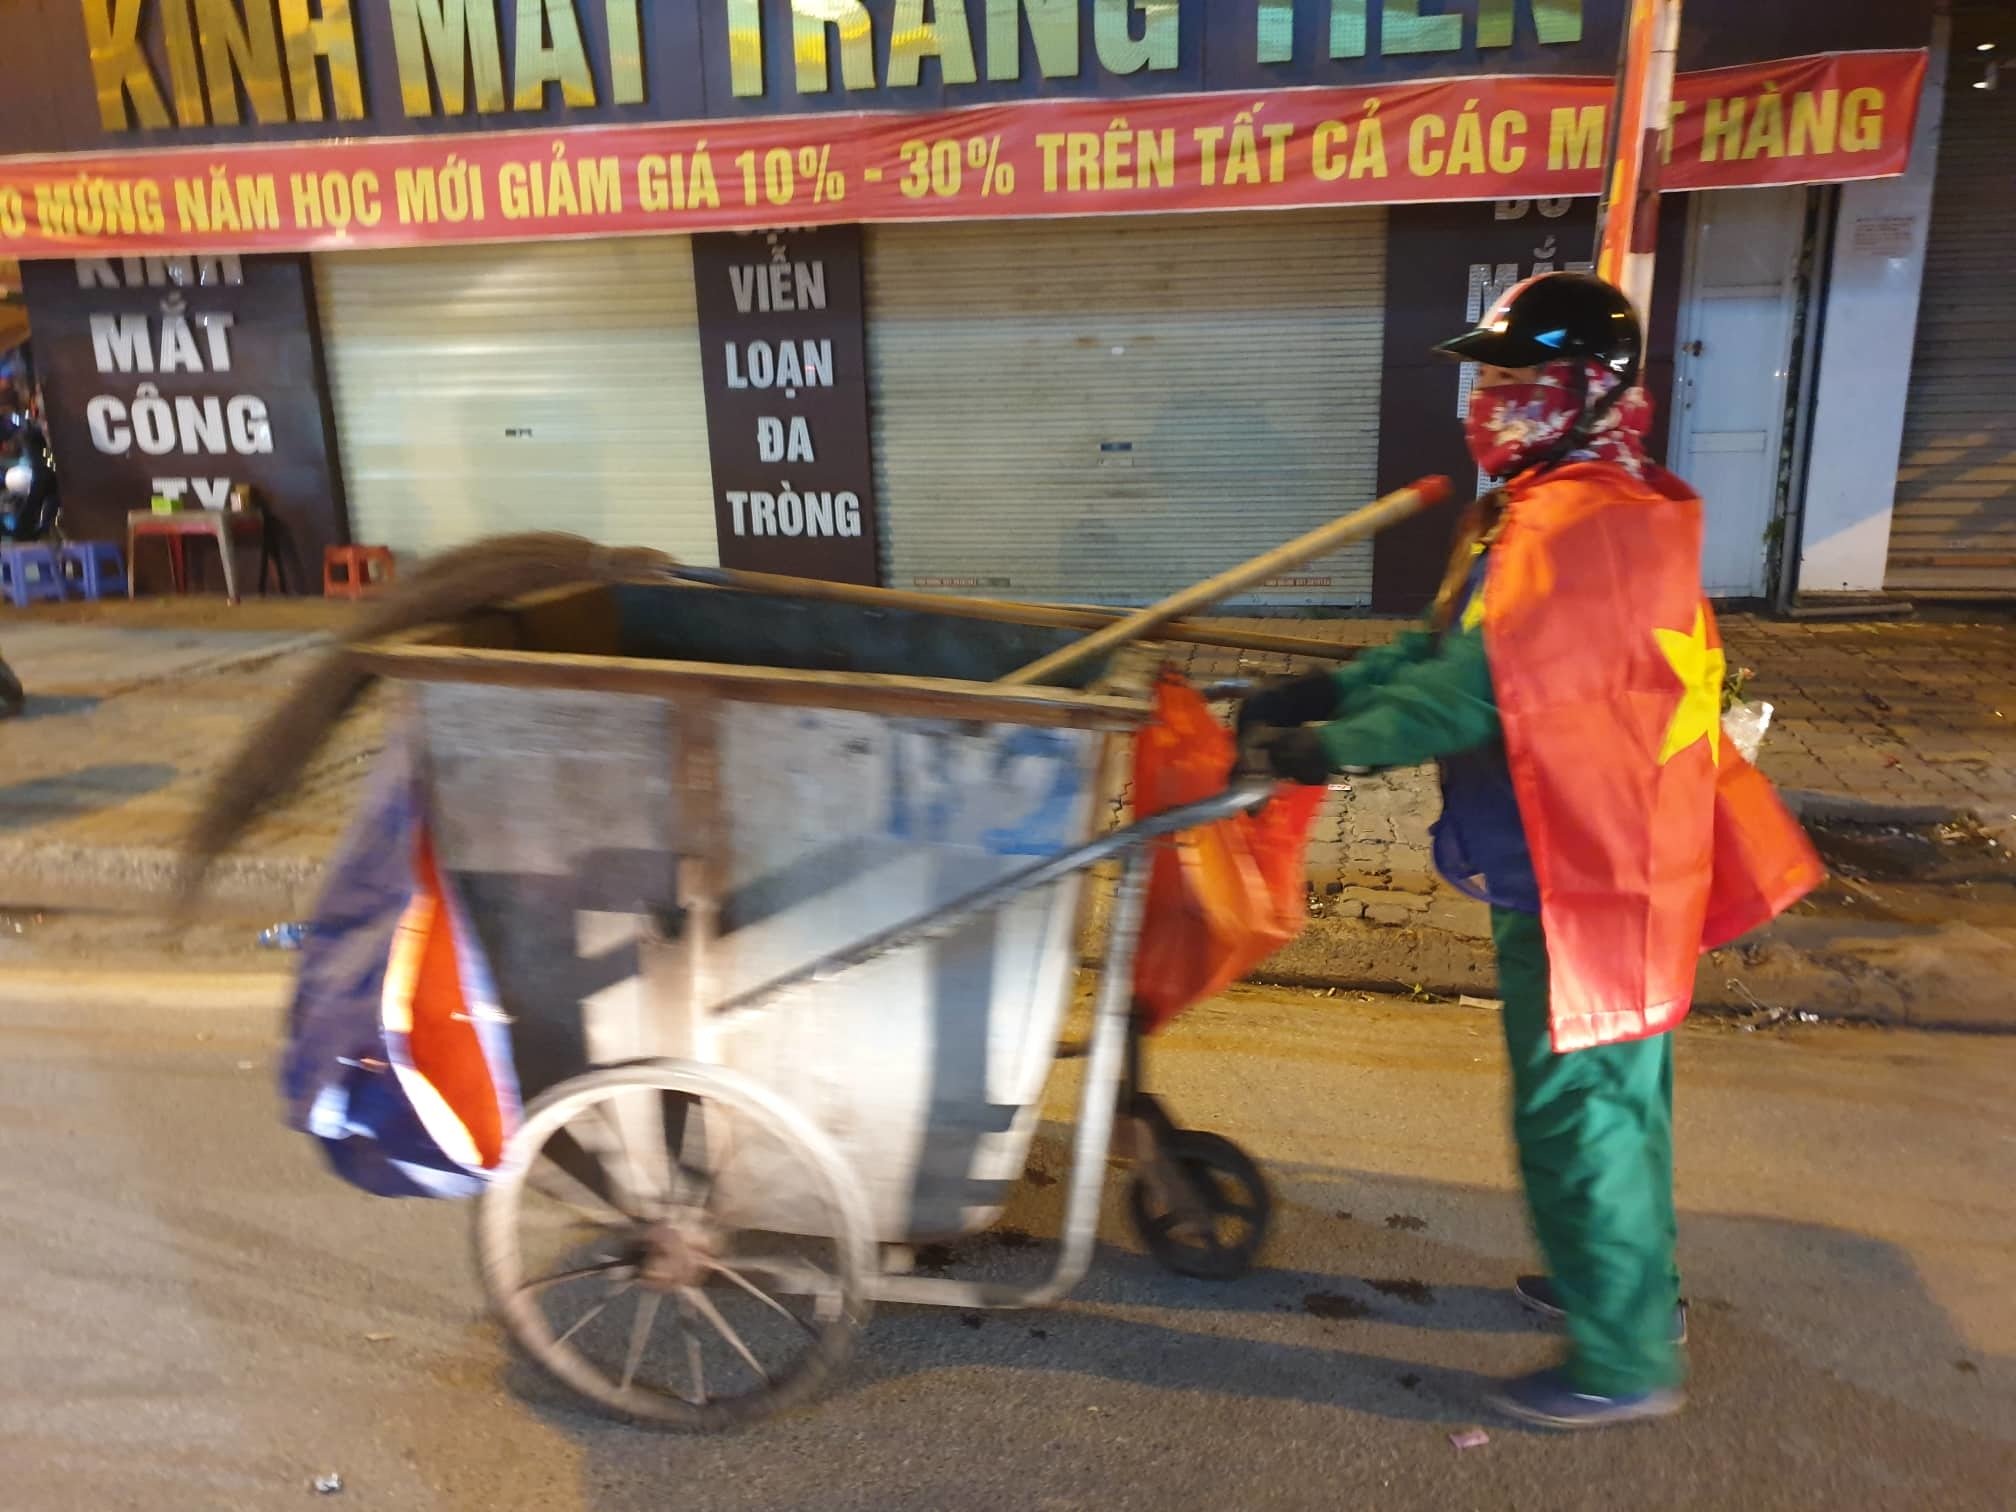 Muôn Kiểu Đi Bão Hài Hước Chỉ Có Ở Việt Nam | Tin Tức Online